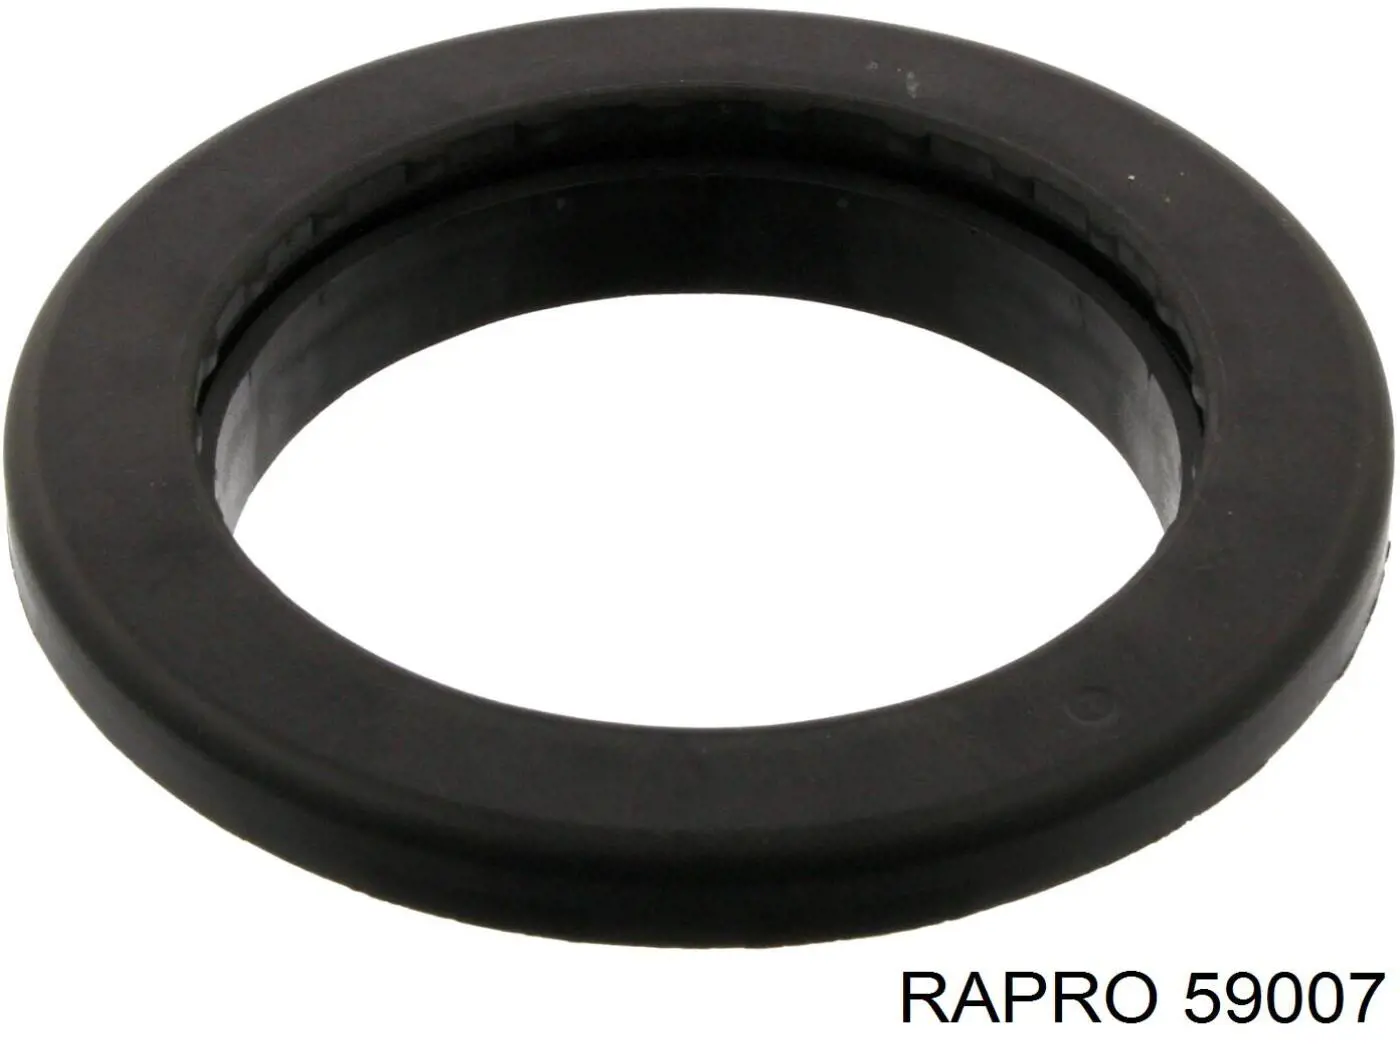 59007 Rapro silentblock de suspensión delantero inferior